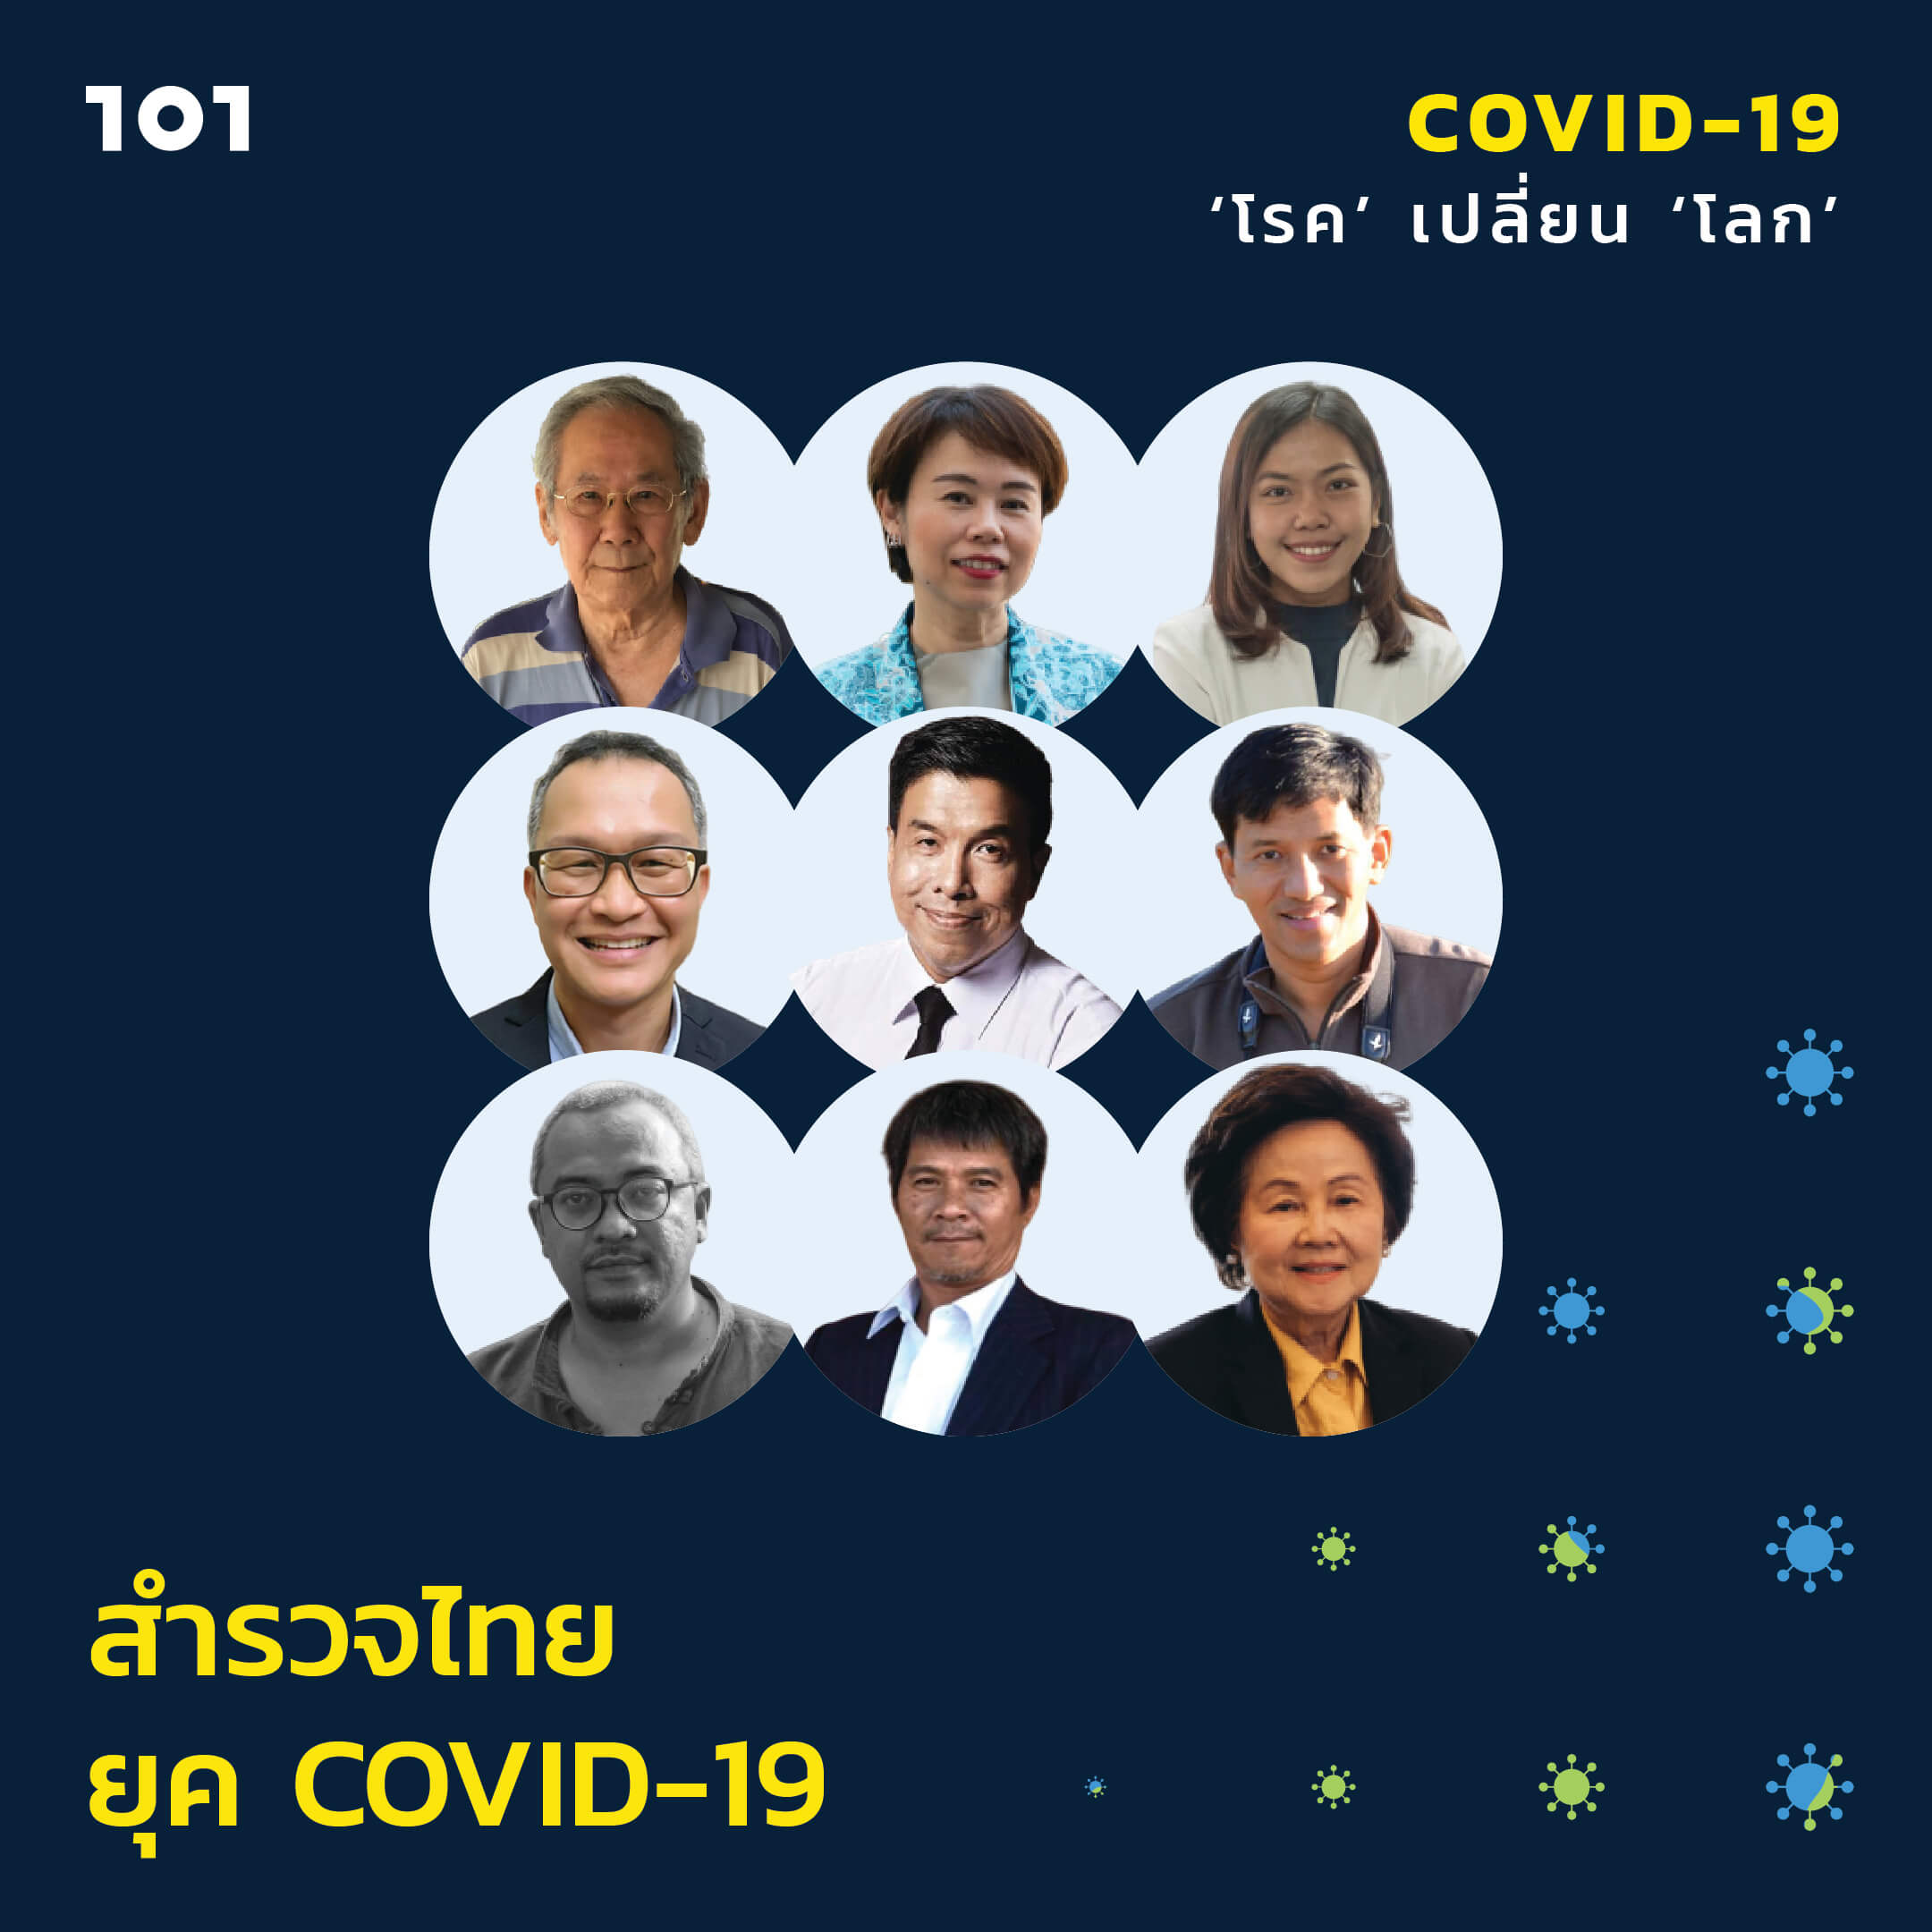 สำรวจไทยยุค COVID-19